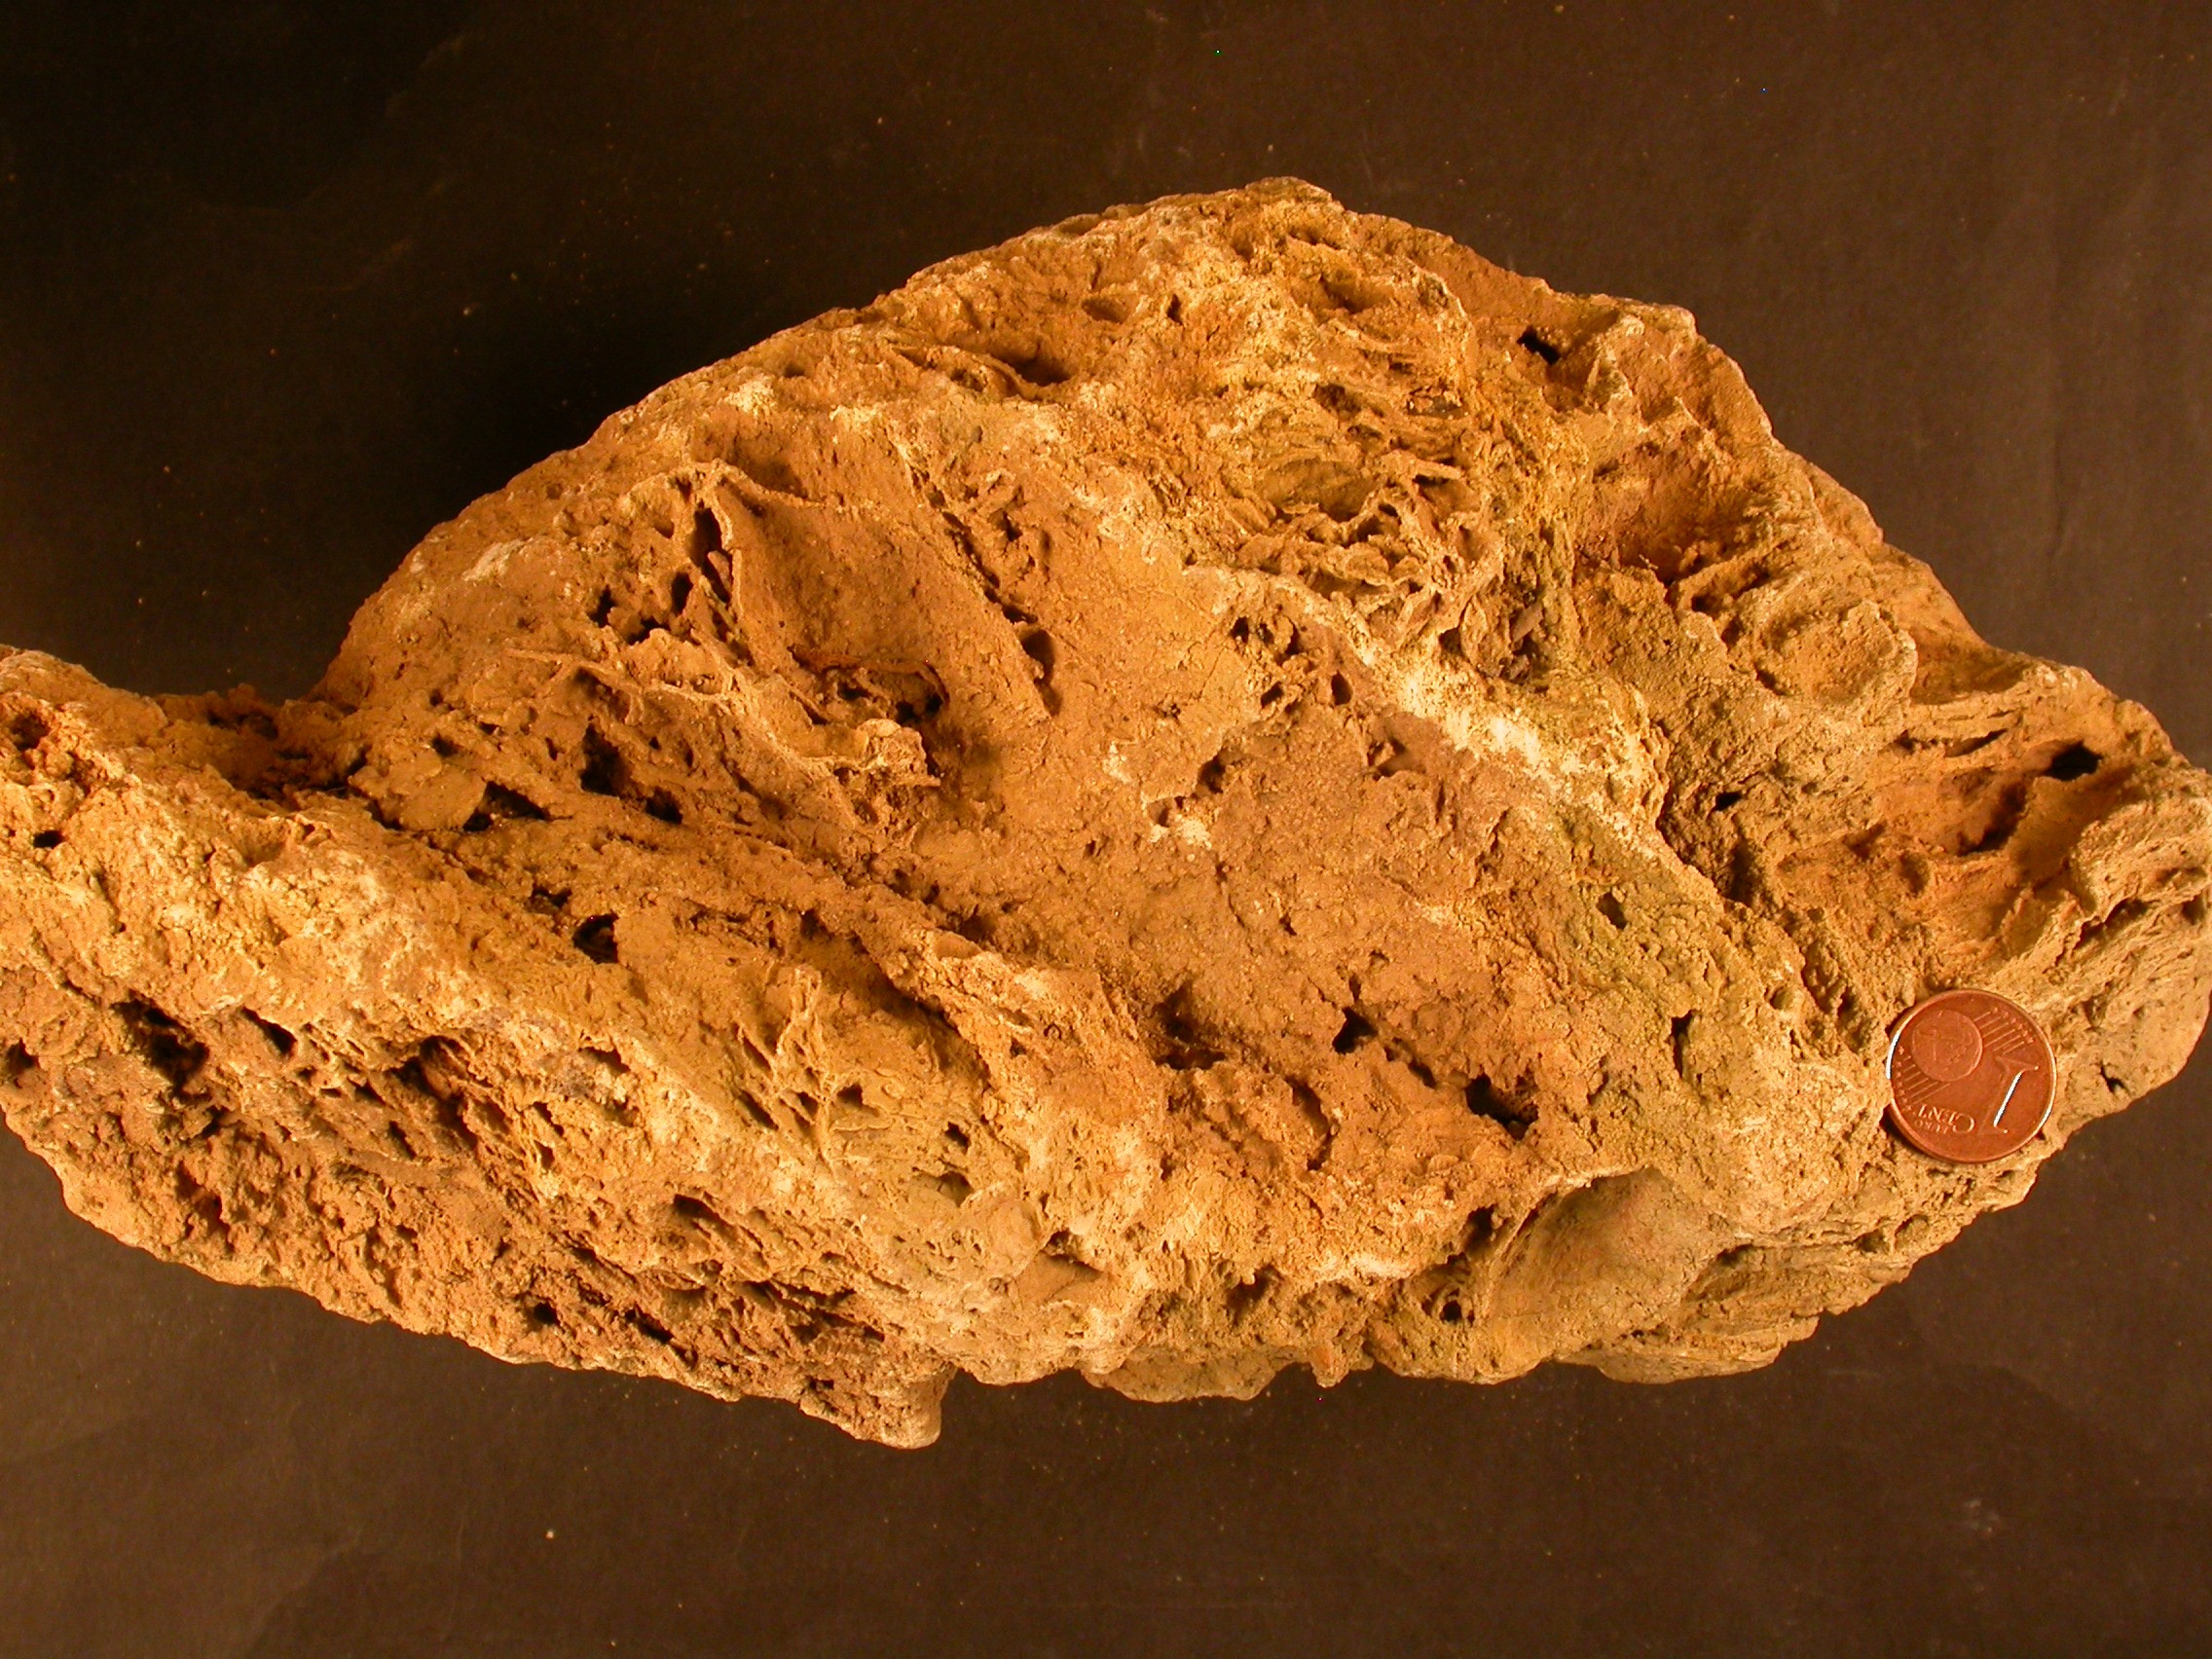 Travertí: roca sedimentària carbonàtica